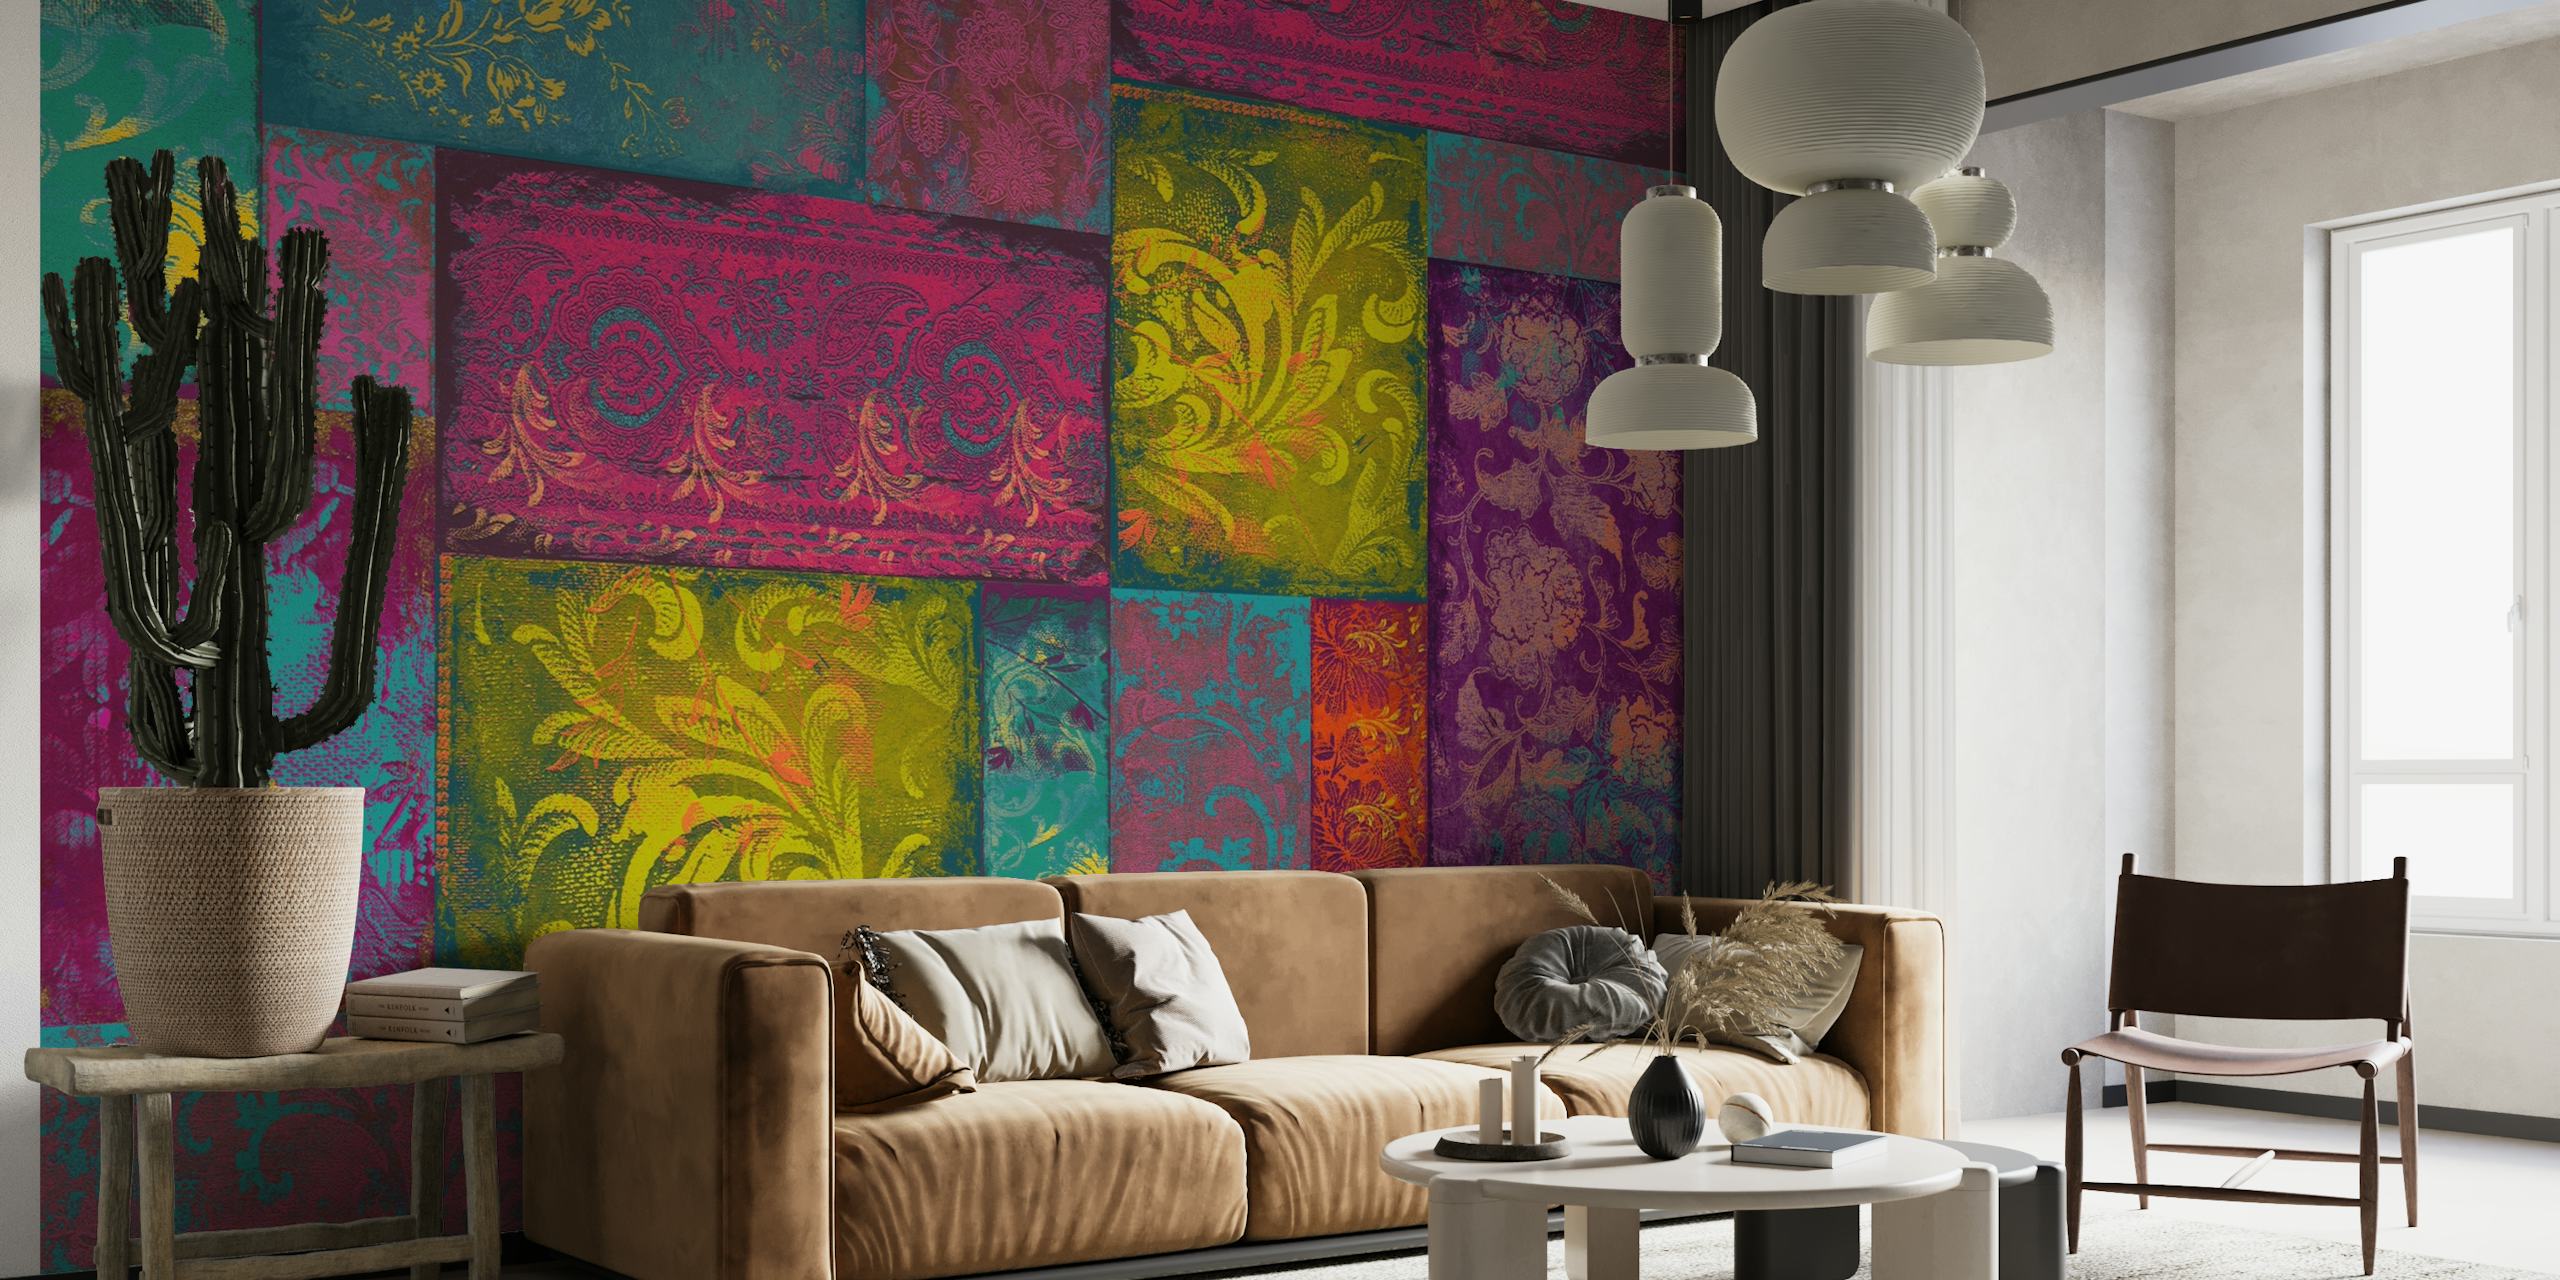 Bohemian Patchwork felroze fotobehang met een verscheidenheid aan patronen in de kleuren roze, geel en paars